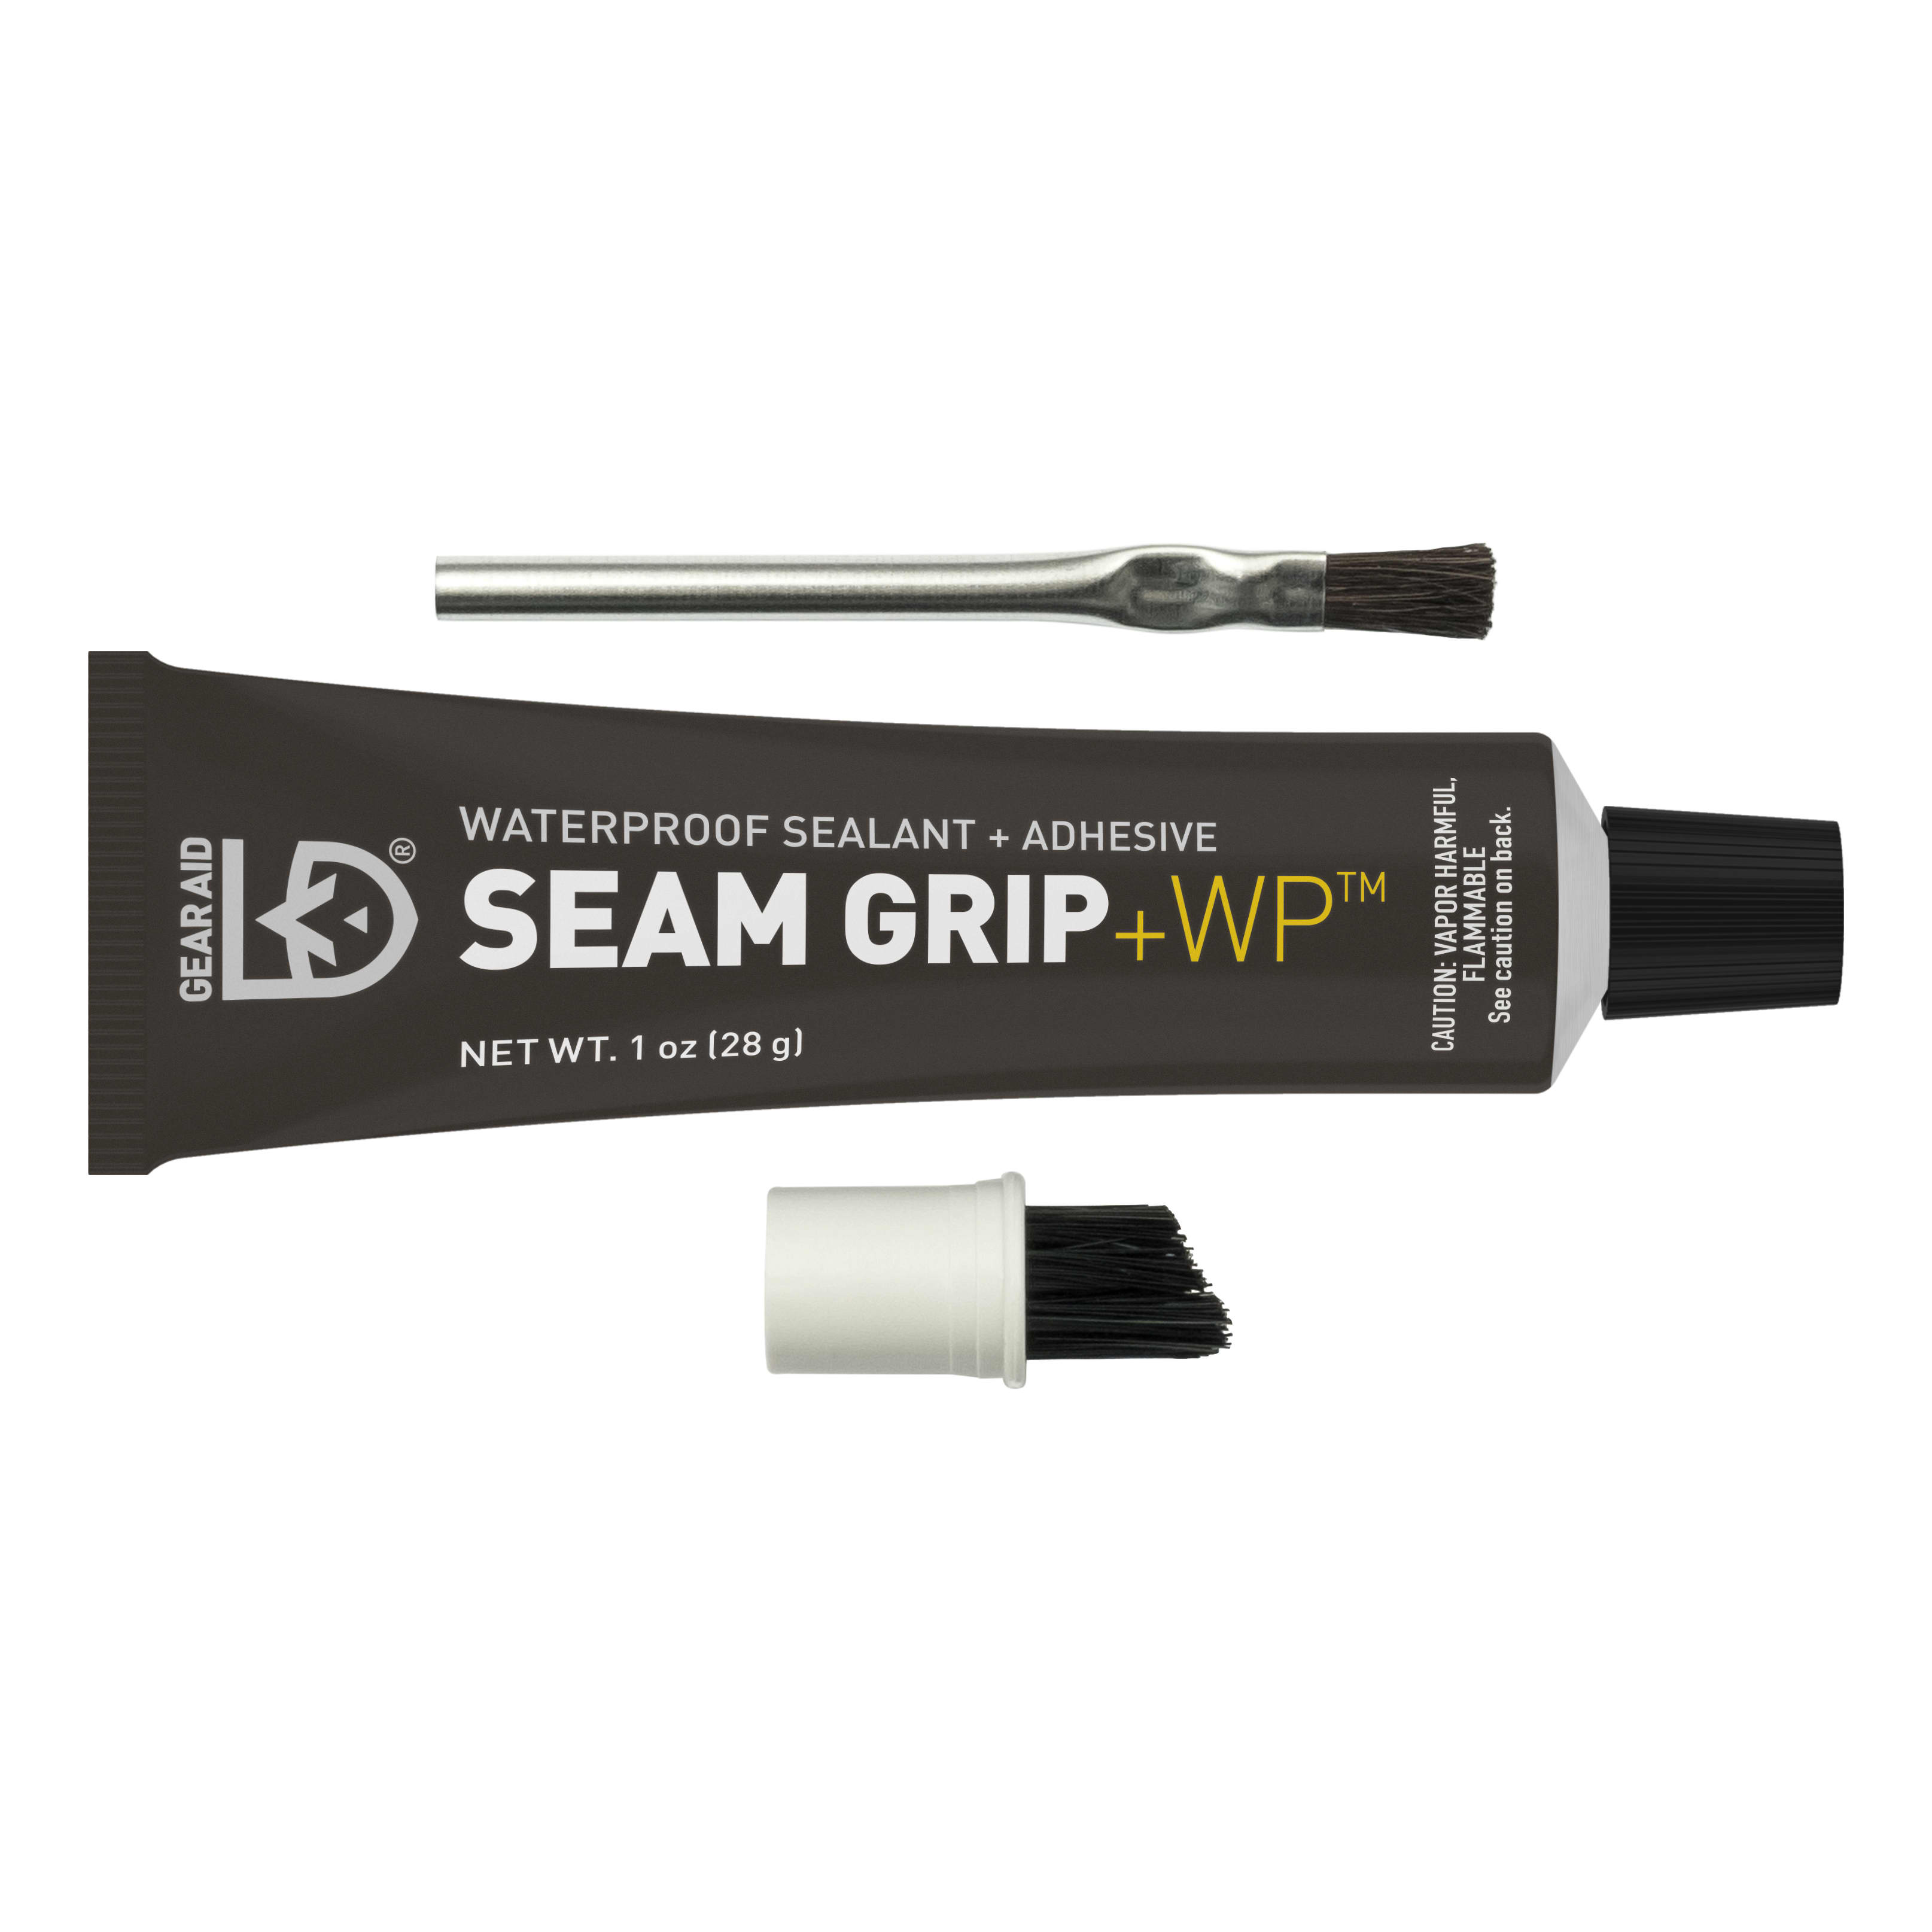 Gear Aid Seam Grip+WP Reviews - Trailspace